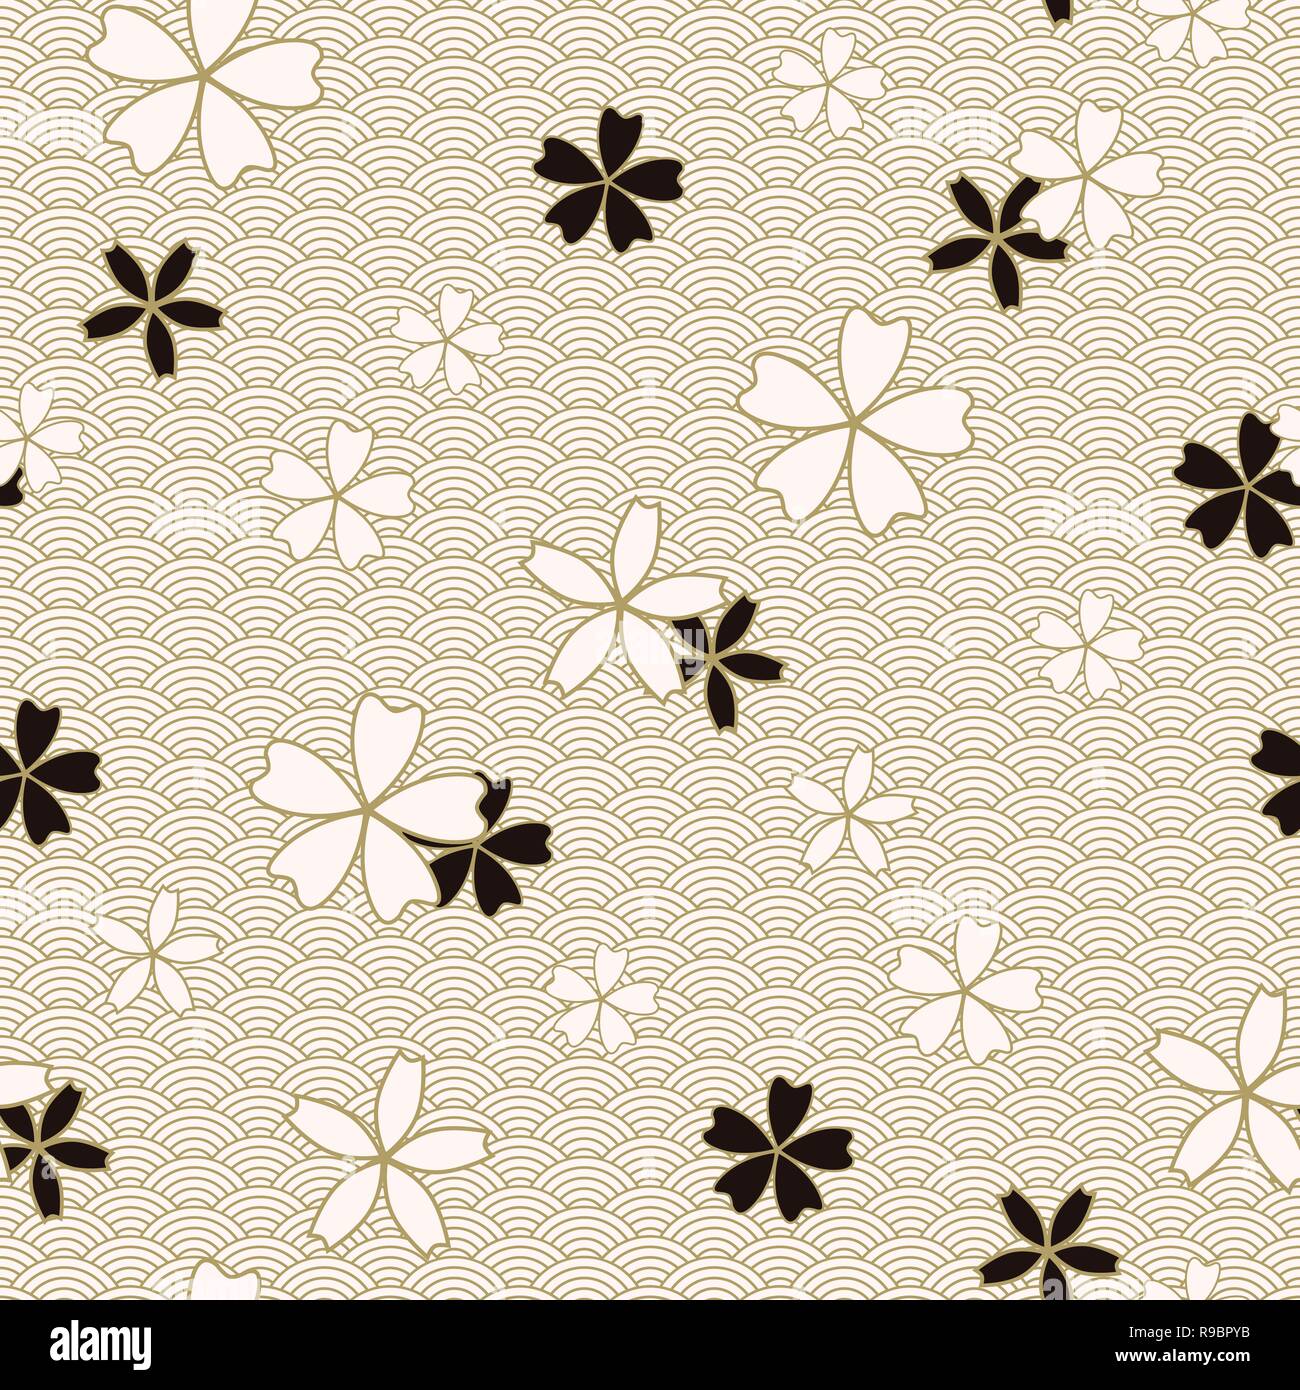 Japanischen Klassiker Sakura Vektor nahtlose Muster floral in schwarz und beige Farben. Die traditionellen Kimono, Asiatische festliche Motiv mit Frühling Blumen blühen, goldene Schlaganfall Wirkung Stock Vektor